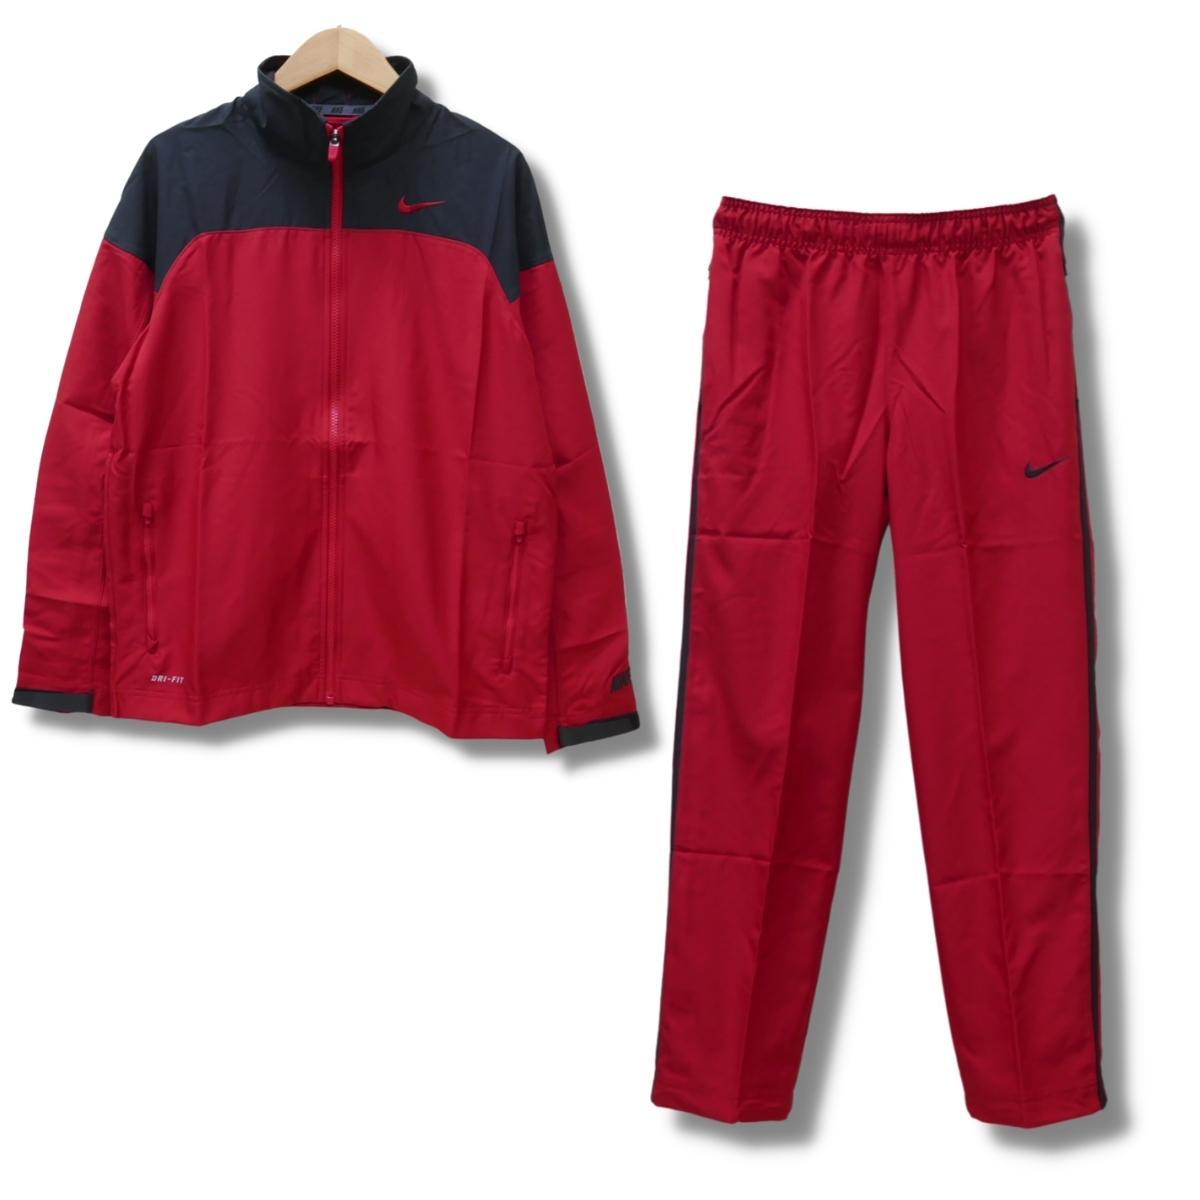 即決☆ナイキ ウーブンジャケット 上下セット RED/XLサイズ 送料無料 ウインドブレイカー ウインドジャケット パンツ 防風 赤 レッド